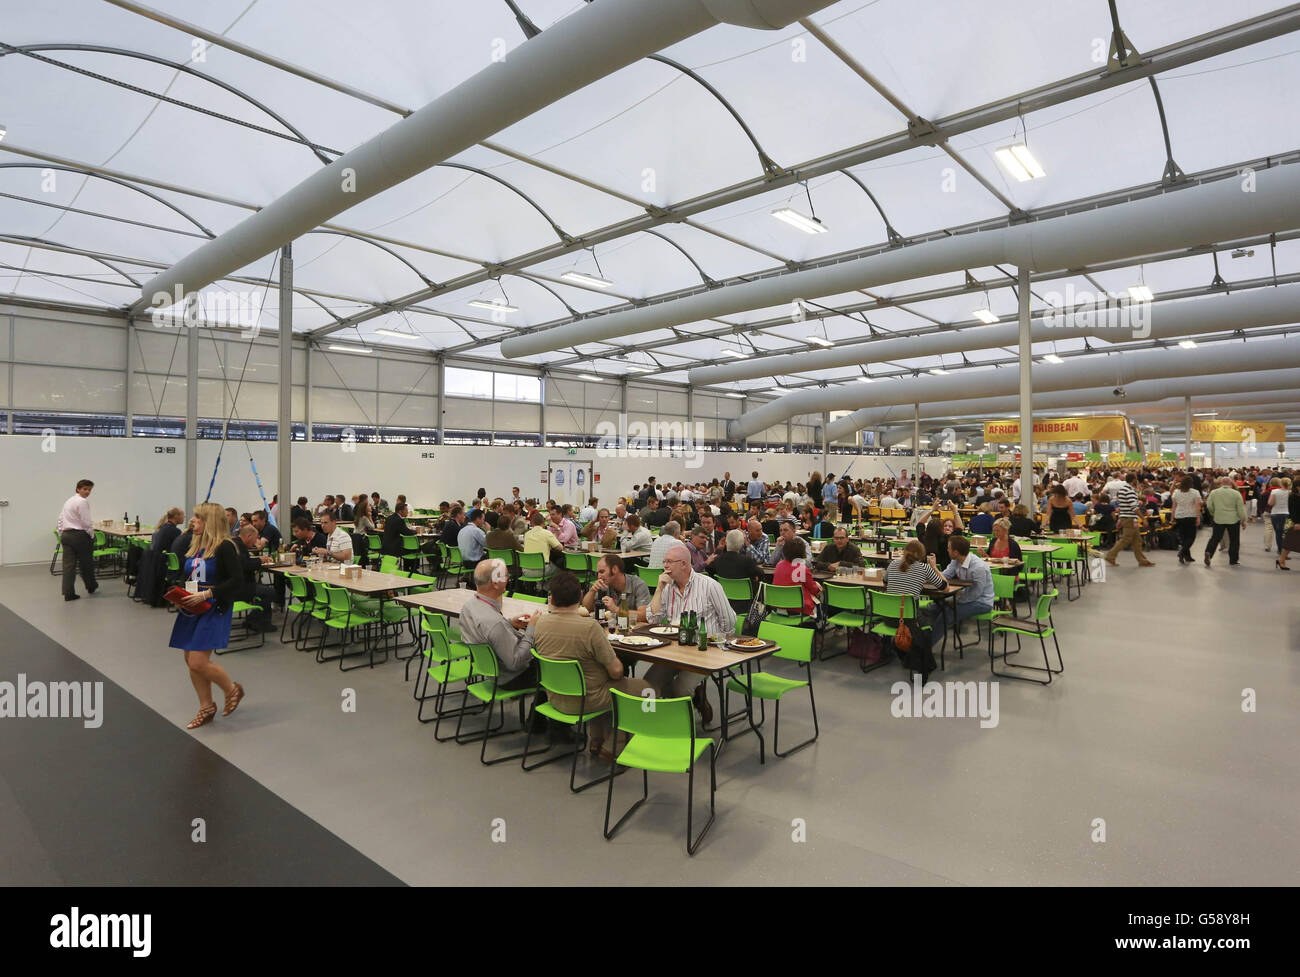 Les clients testent la salle à manger du village olympique d'une capacité de 5,000 personnes, une structure temporaire construite pour les Jeux Olympiques de Londres 2012 à Stratford, dans l'est de Londres. Banque D'Images